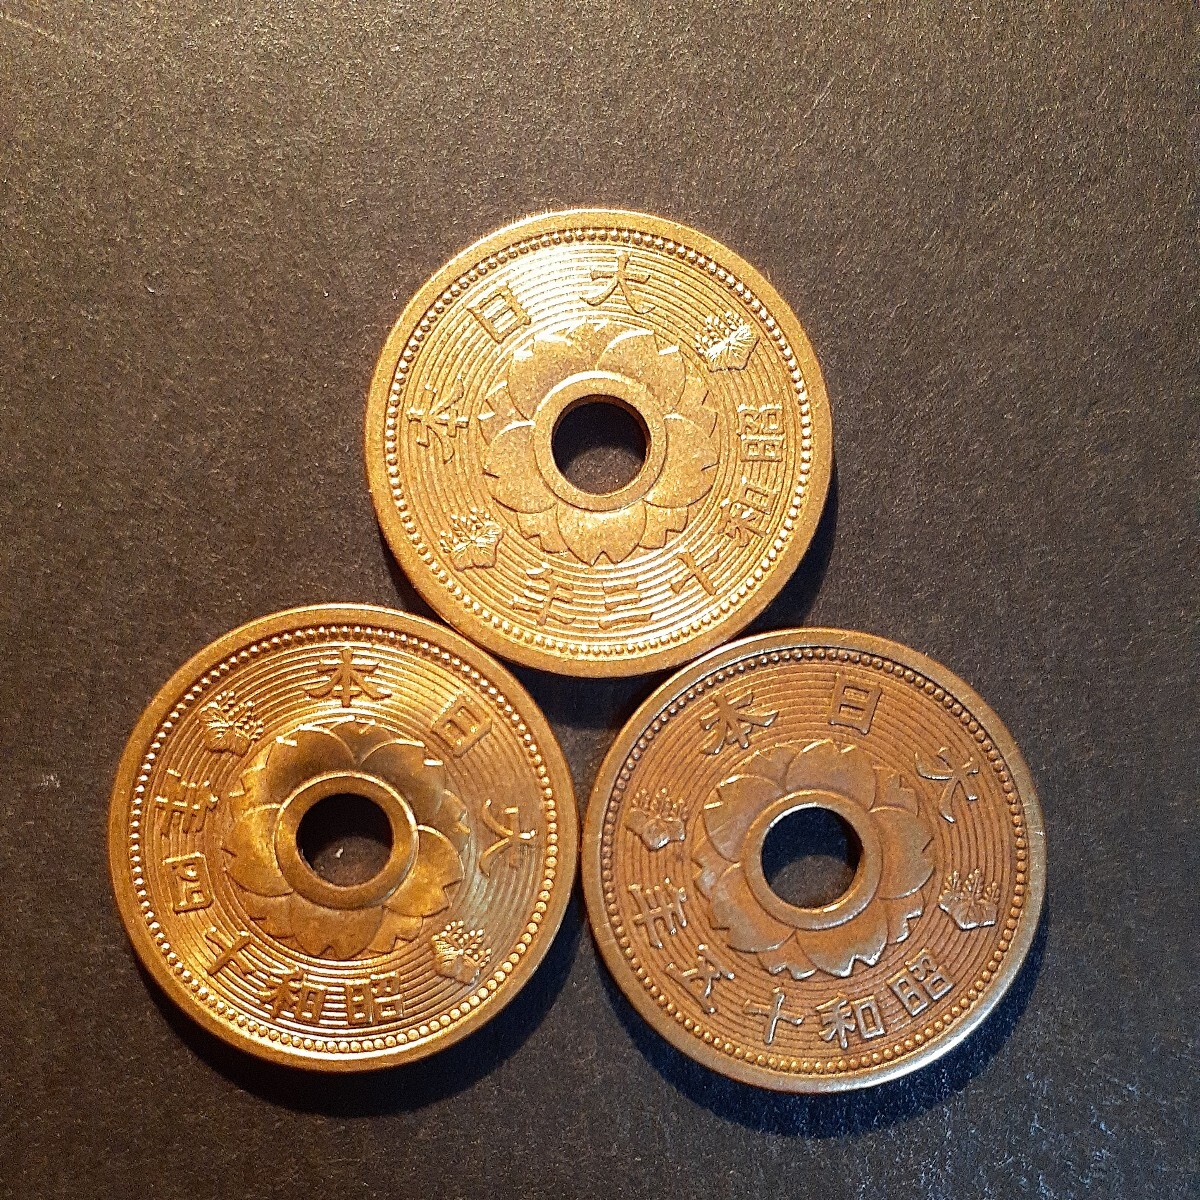 5銭アルミ青銅貨 10銭アルミ青銅貨 全年号コンプリート 昭和13年から昭和15年 6枚まとめて